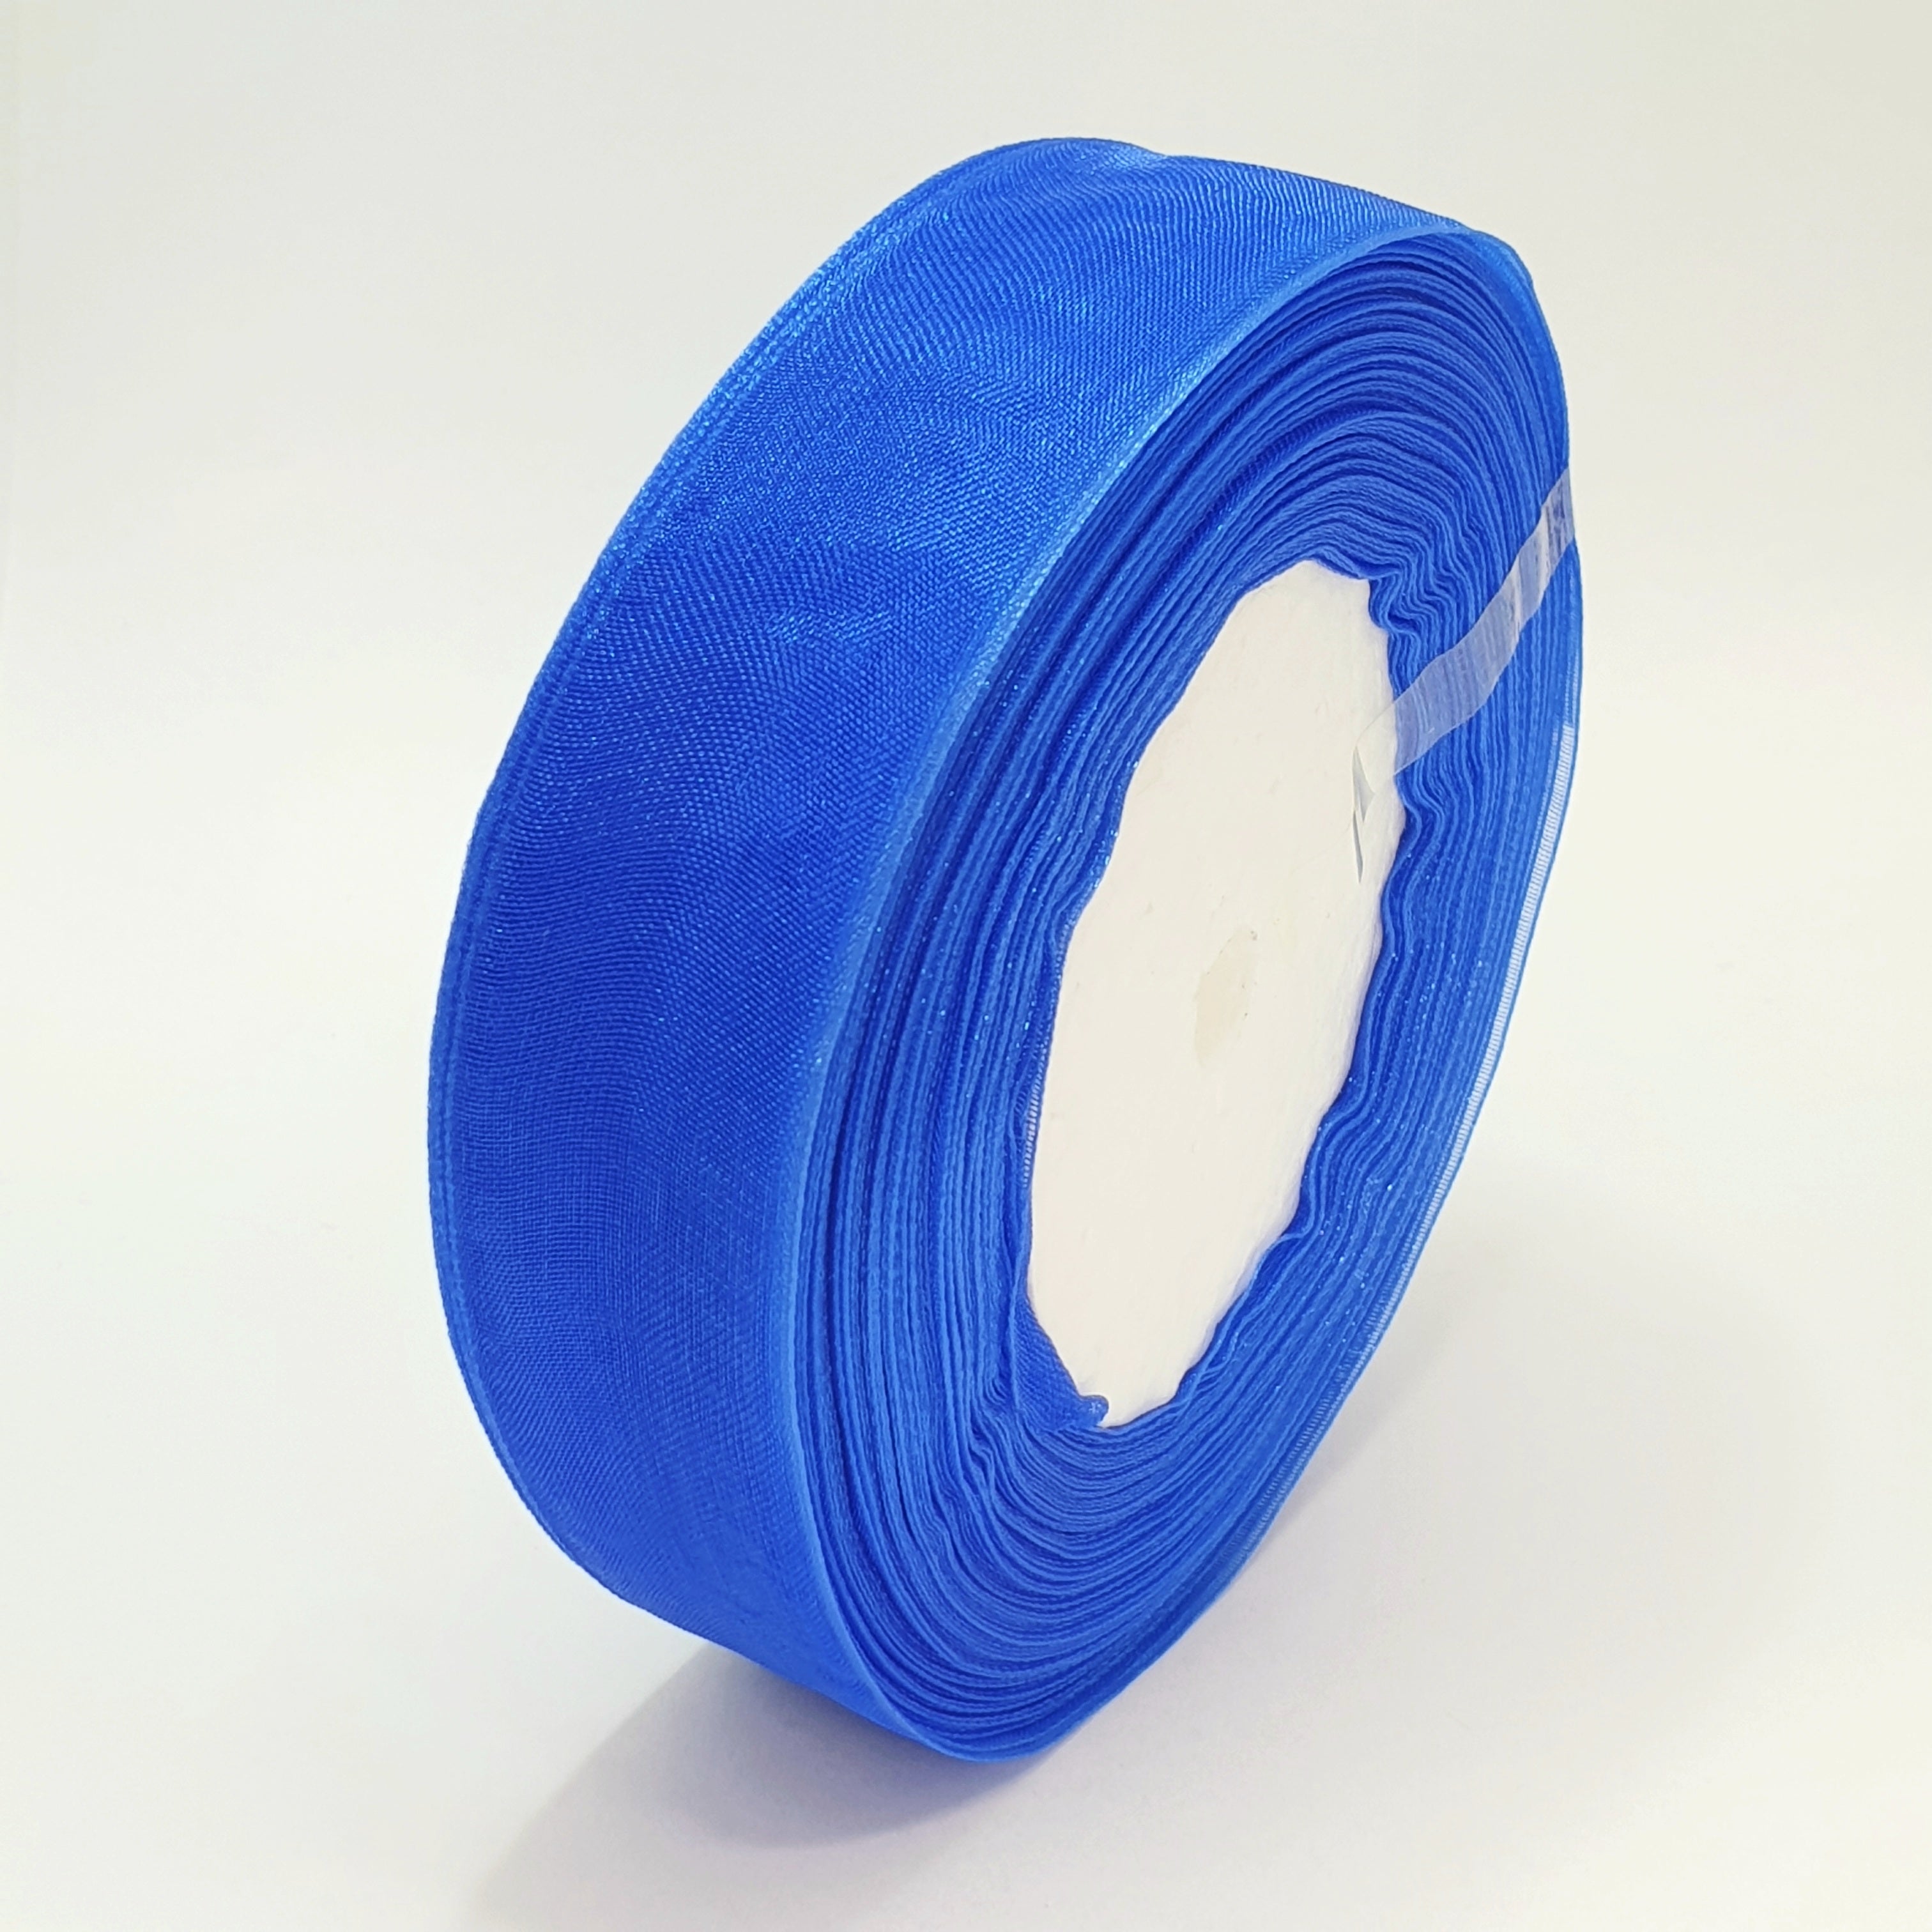 MajorCrafts 25mm 45metres Sheer Organza Fabric Ribbon Roll Royal Blue Shade R1040